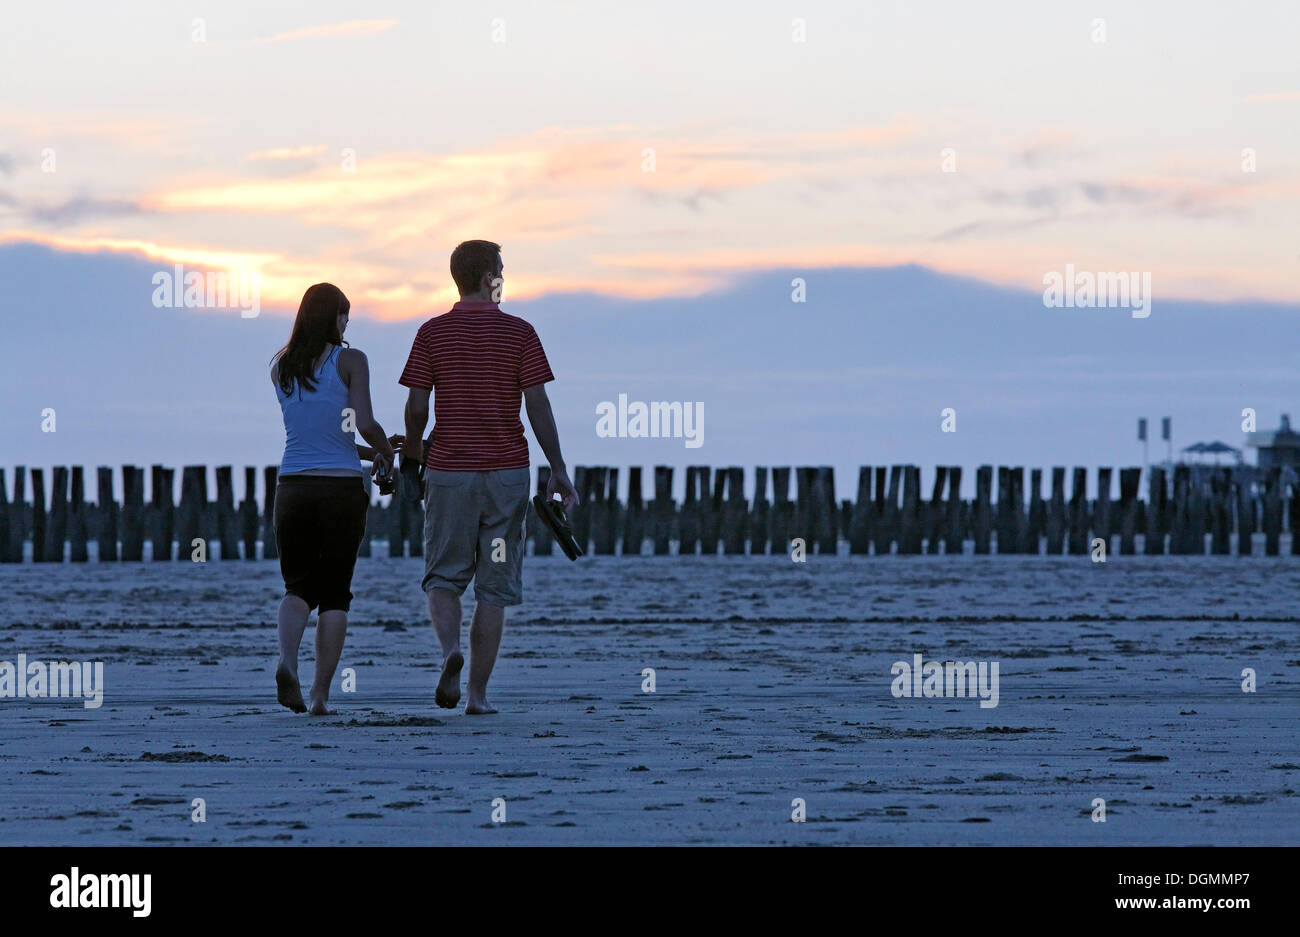 Jeune couple de prendre une marche sur la plage au coucher du soleil, Zoutelande, presqu'île de Walcheren, province de Zélande, Pays-Bas, Benelux Banque D'Images